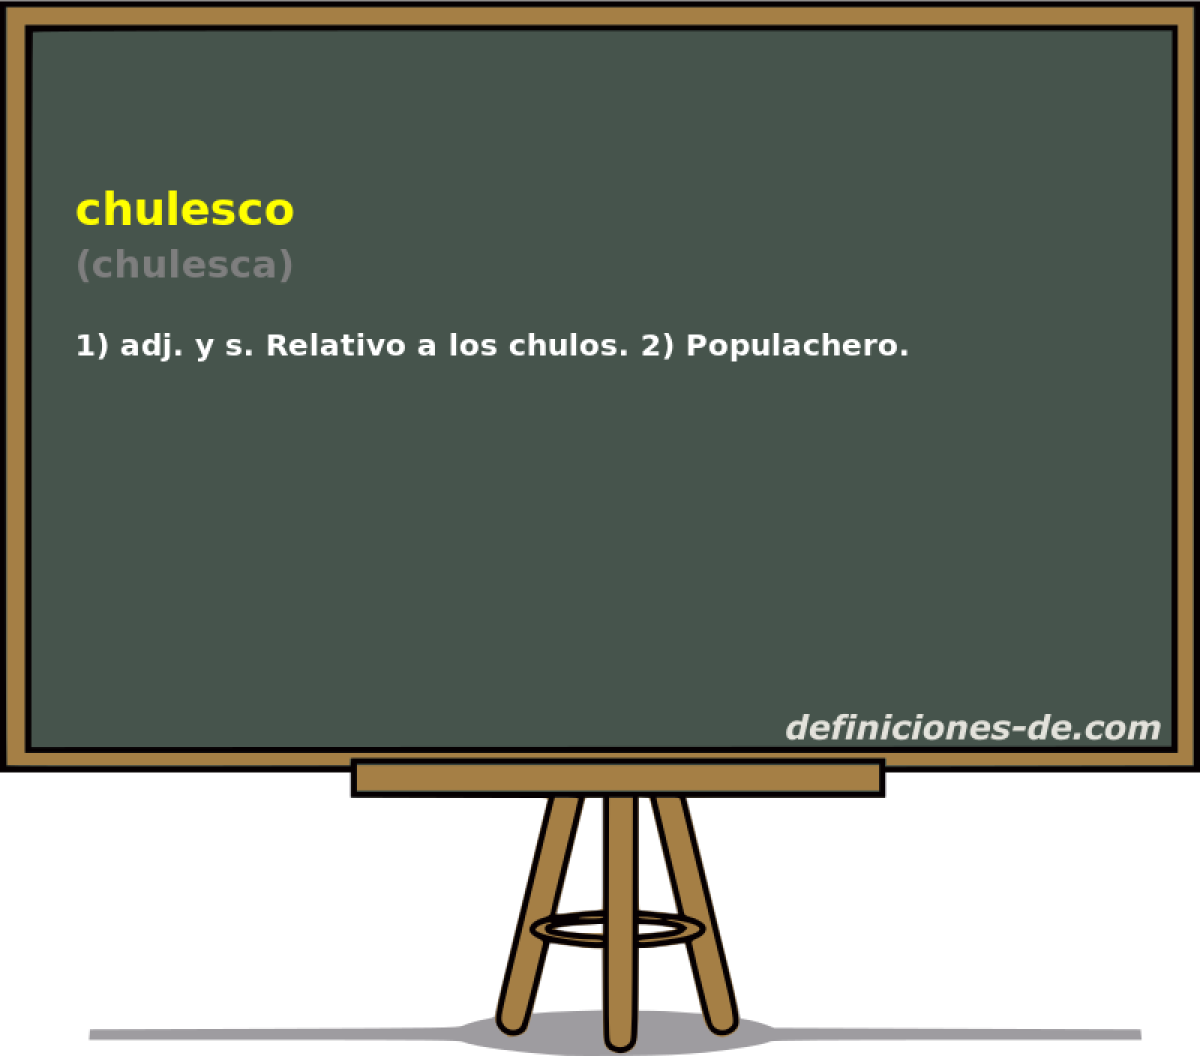 chulesco (chulesca)